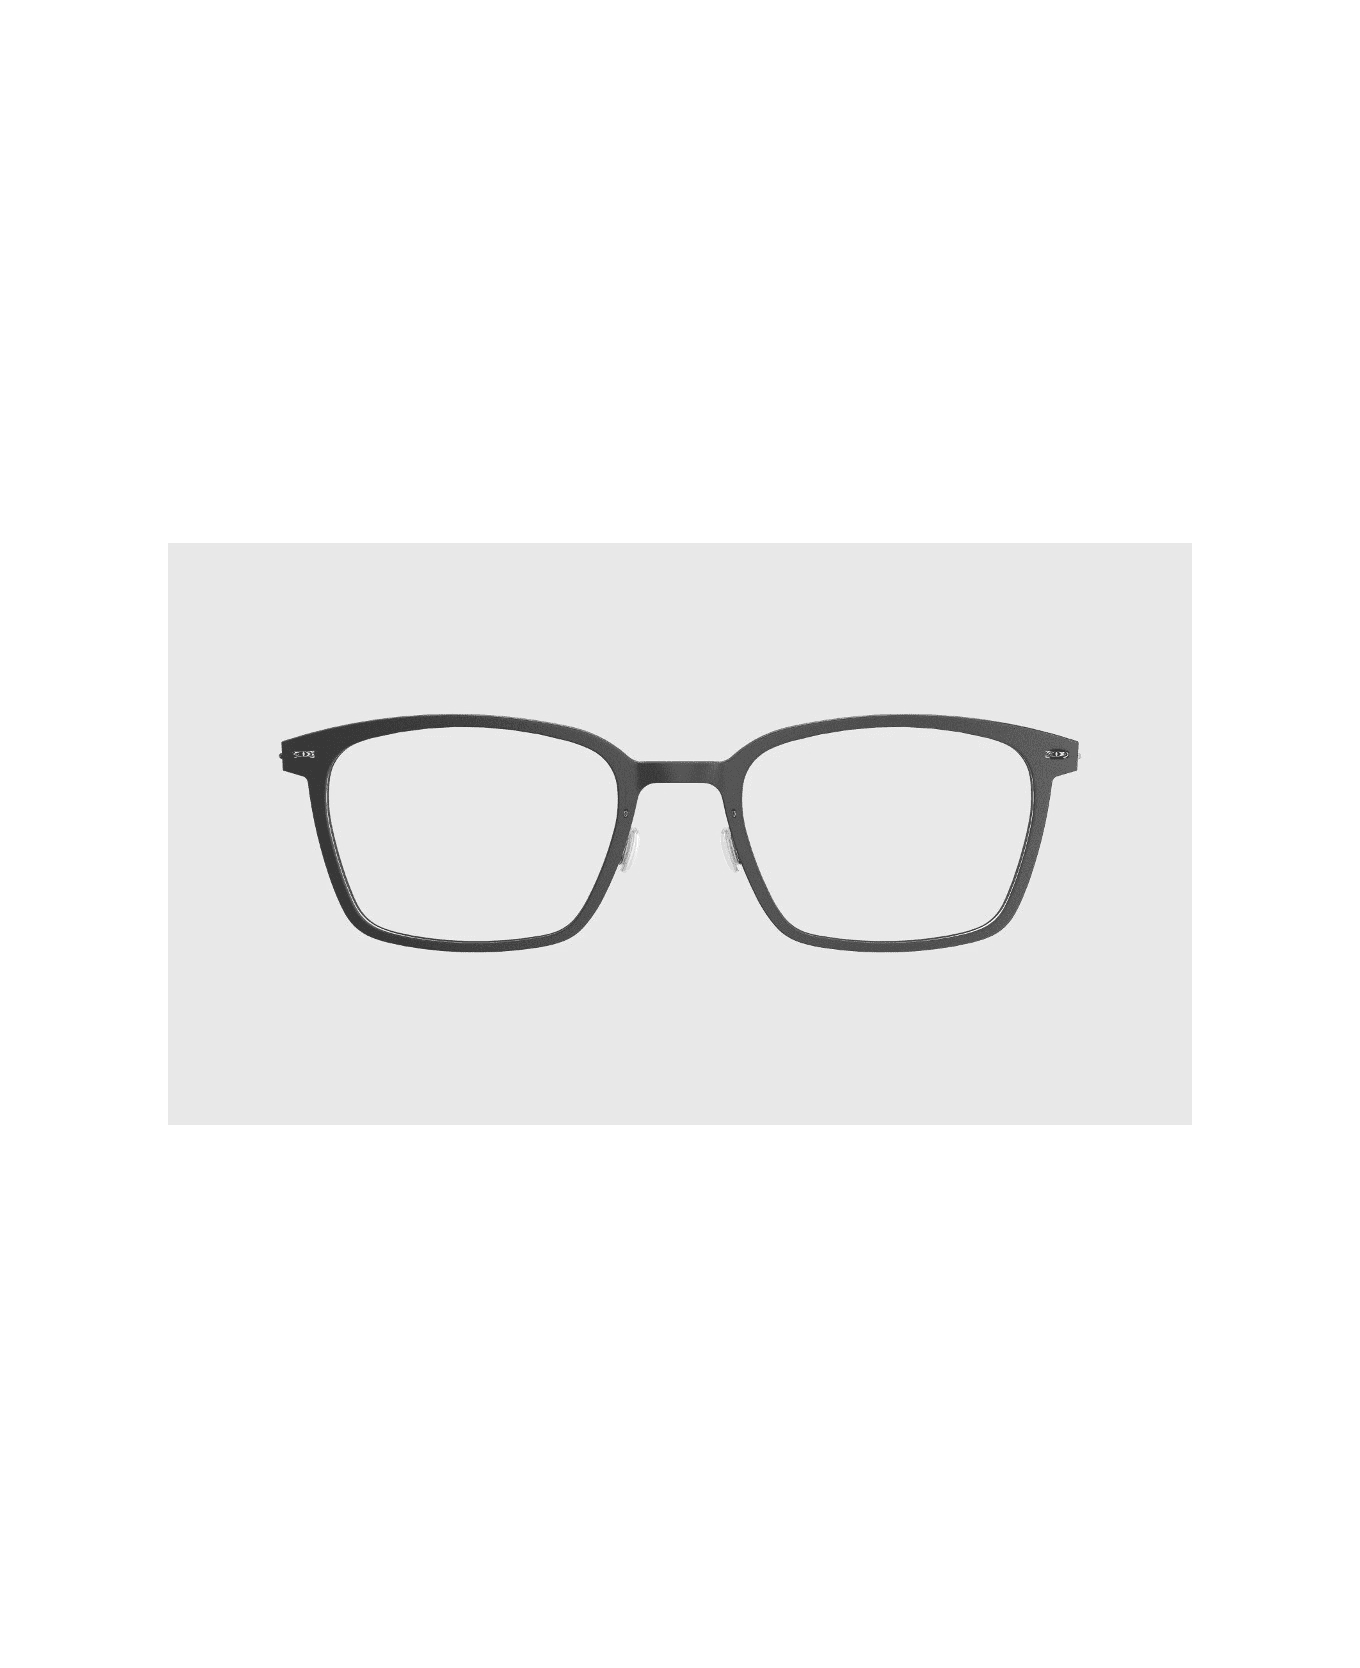 LINDBERG Now 6536 17 51 Glasses - Nero